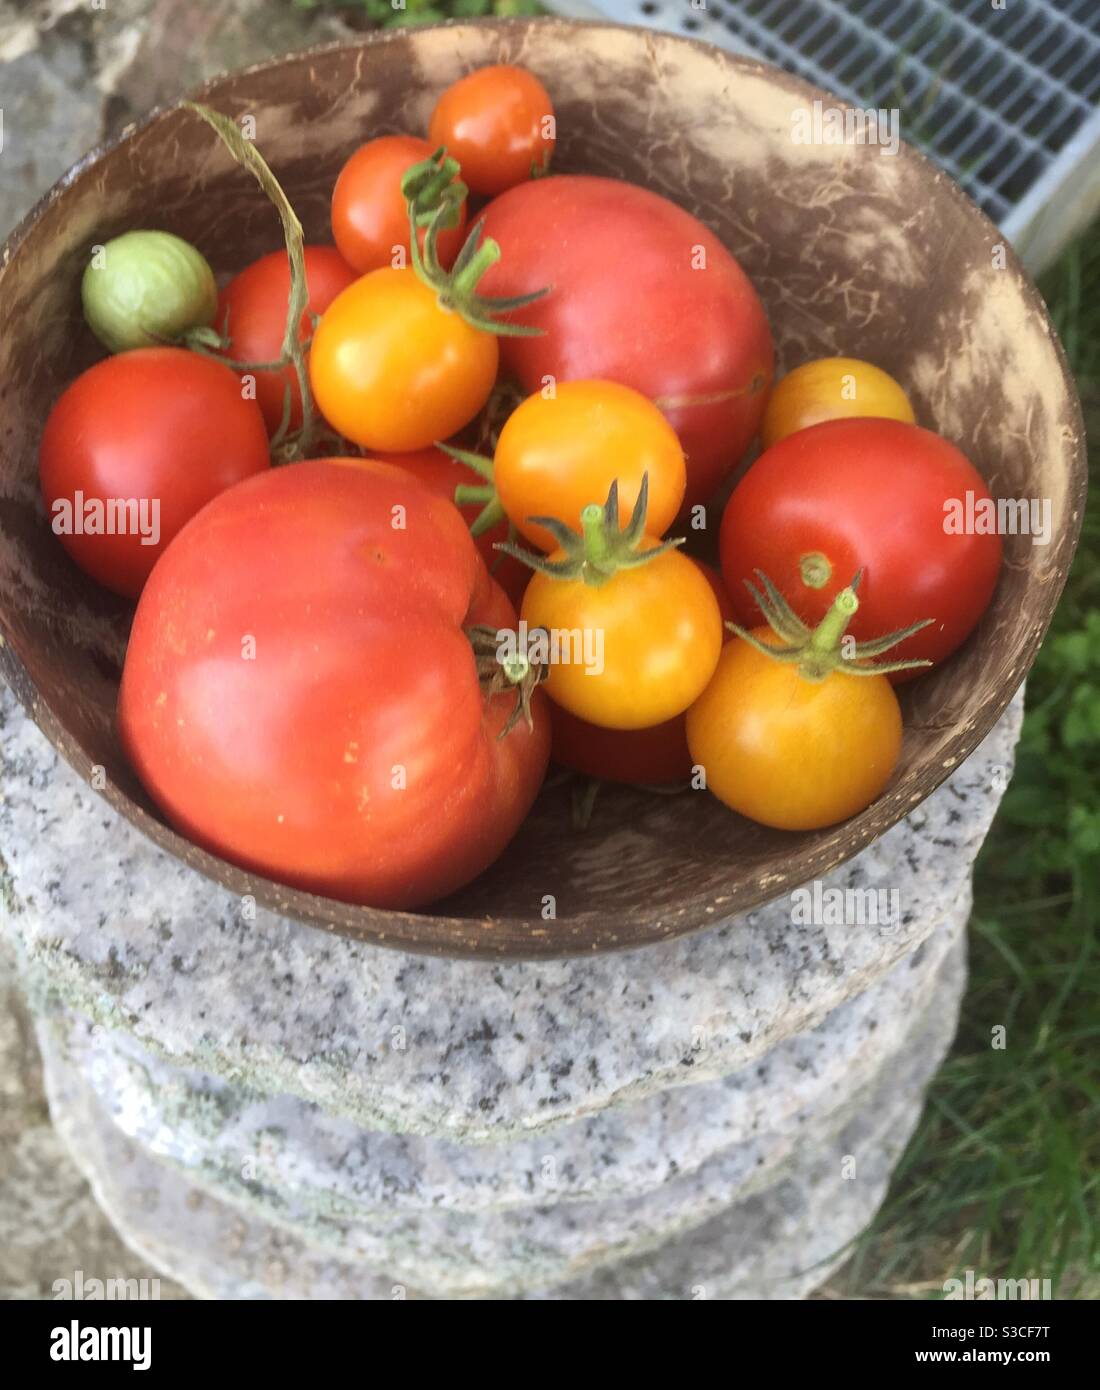 Tomaten in Kokosnussschale Stock Photo